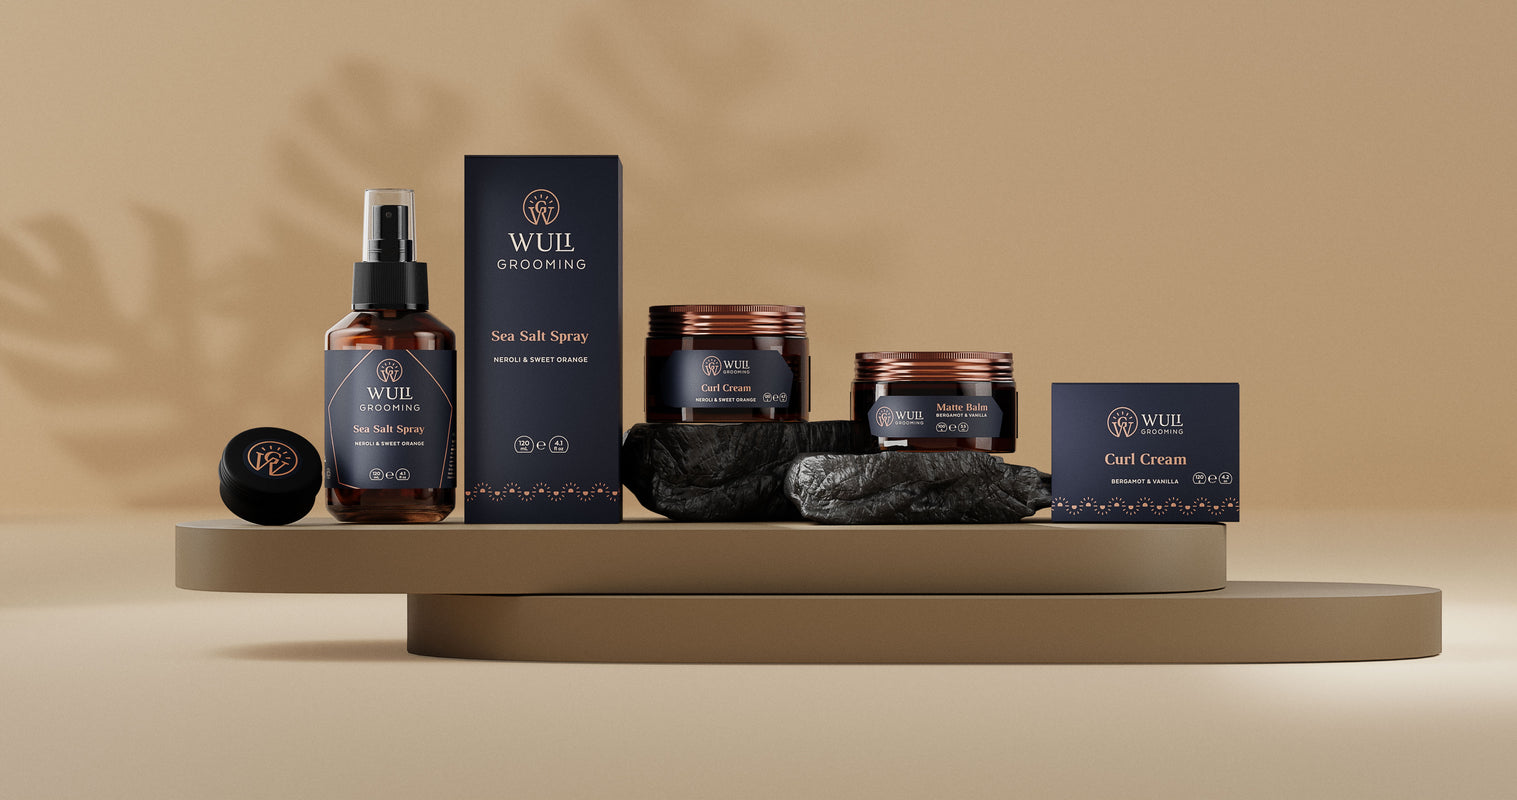 Wuli Grooming hero product range